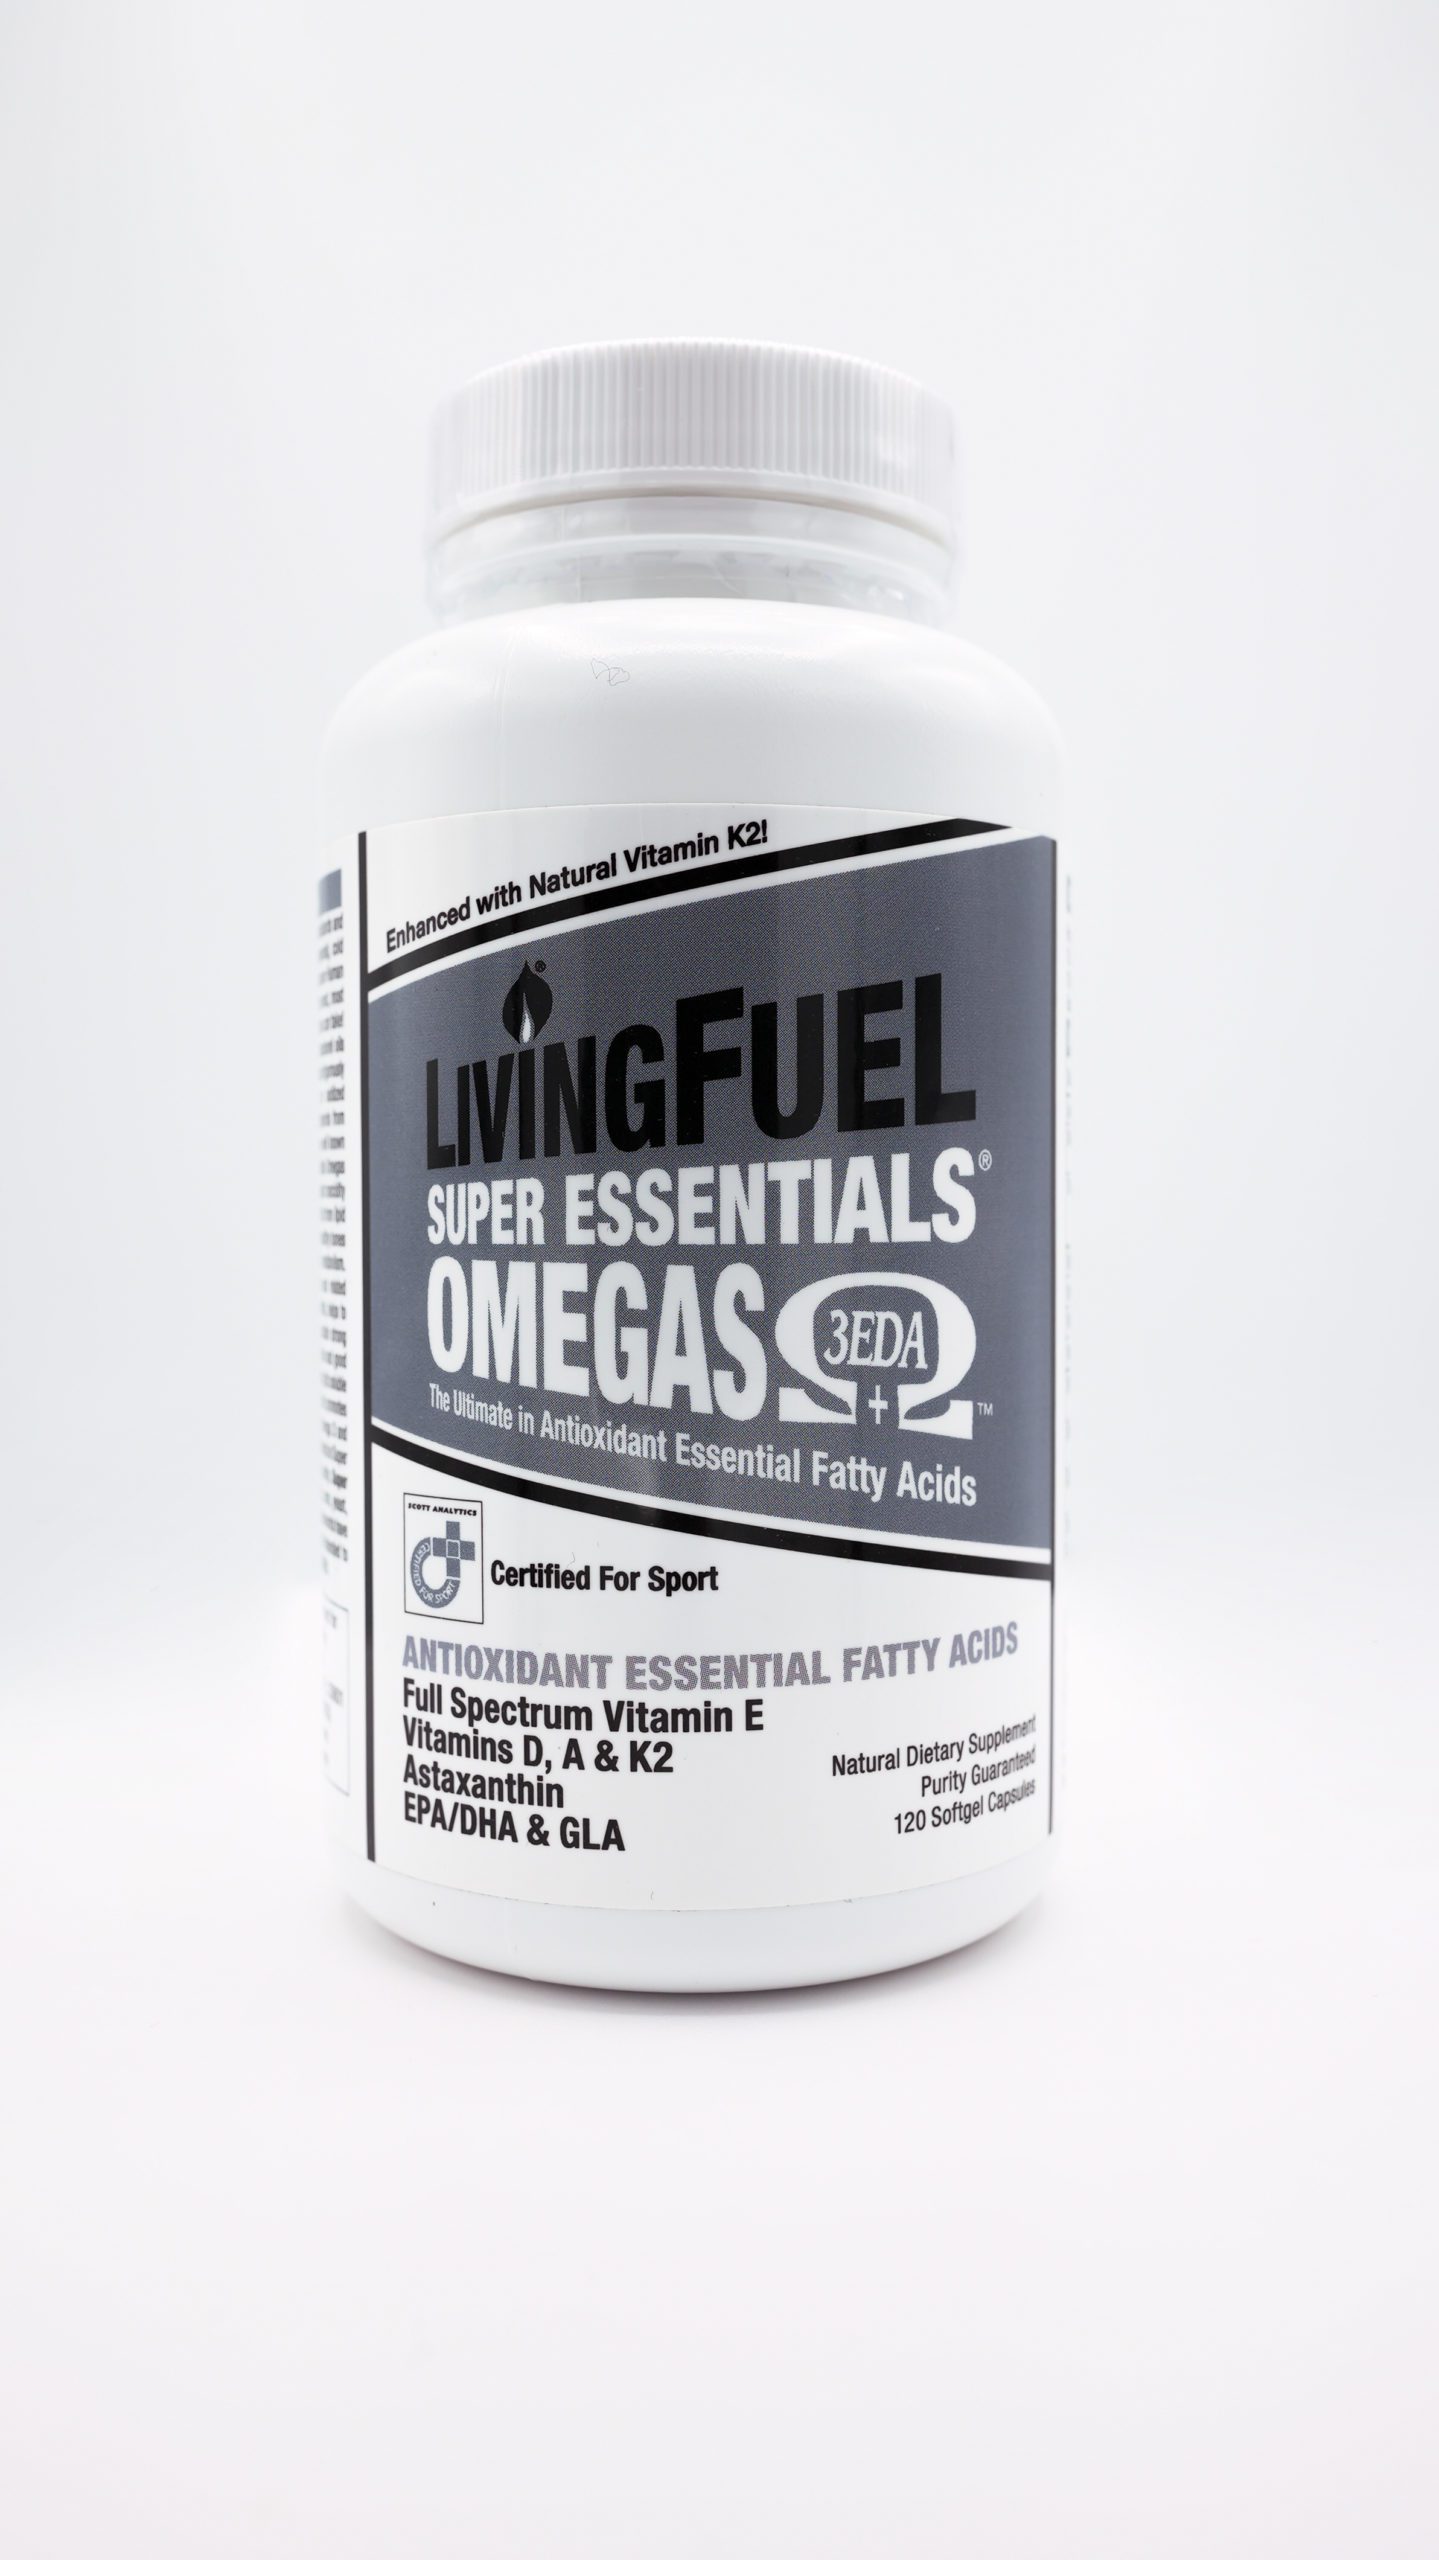 Living Fuel Super Essentials Omega